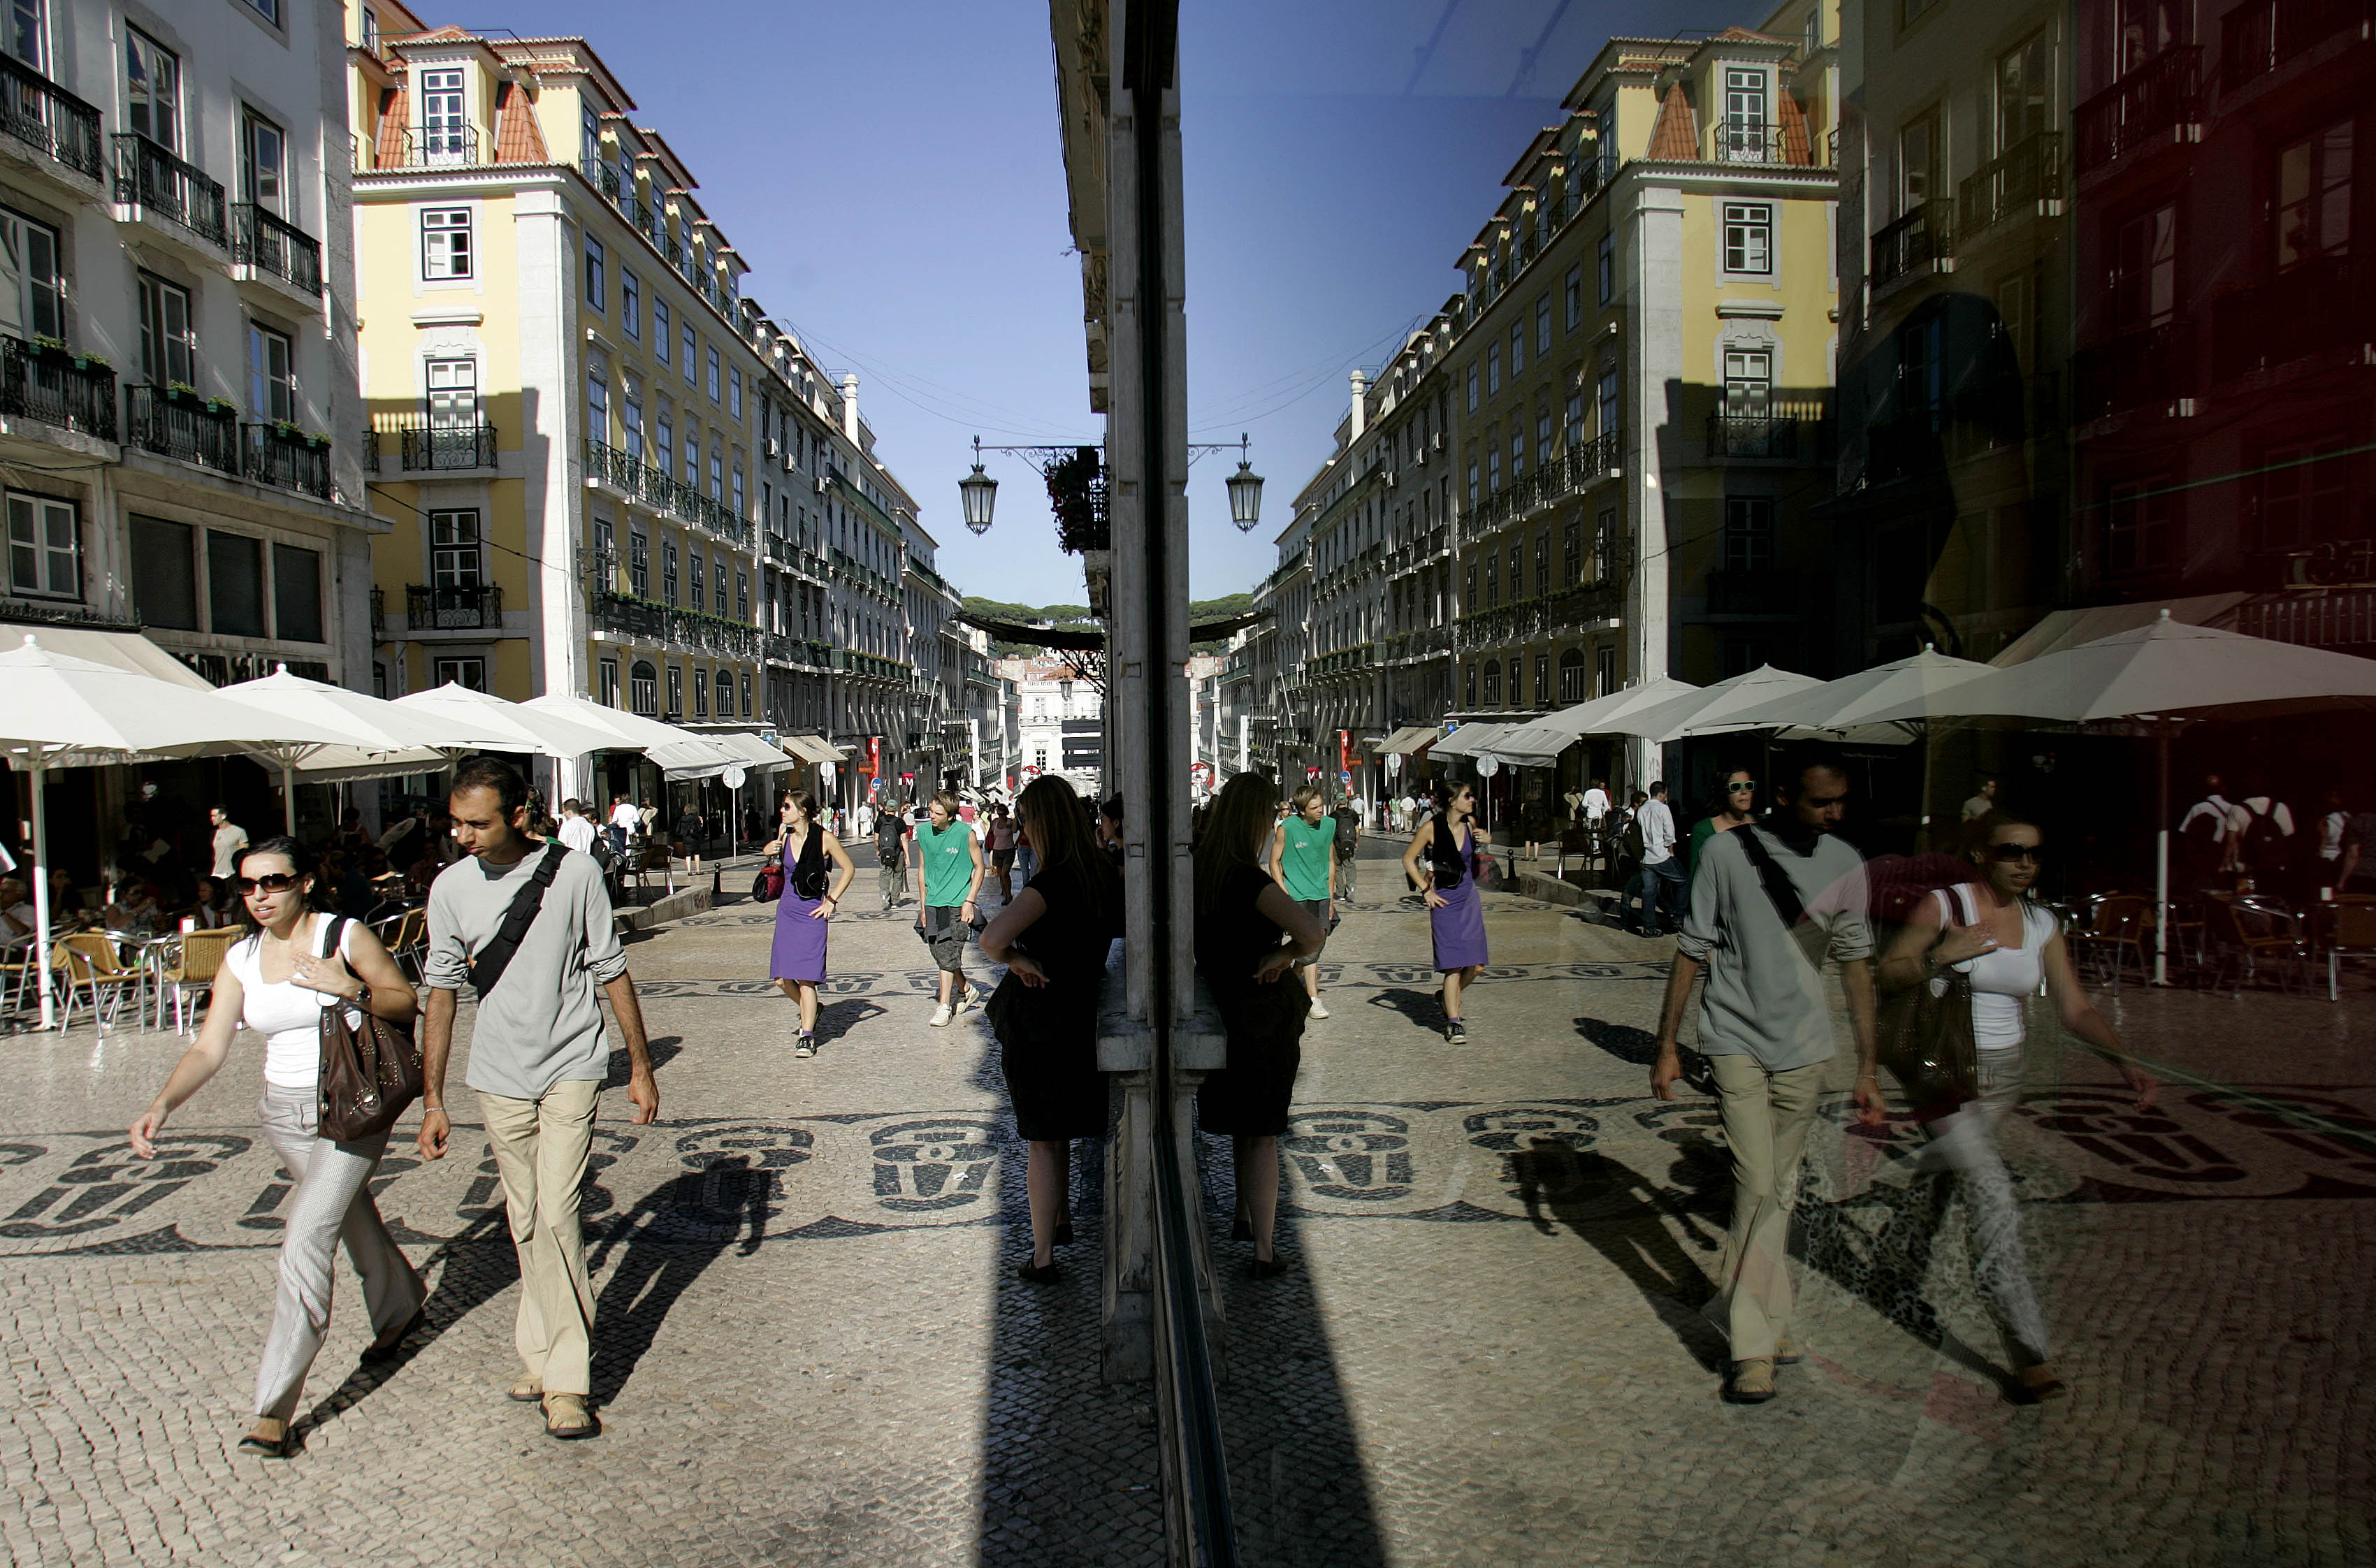 Abatimento de piso de &#8220;dimensões consideráveis&#8221; na rua Garrett, Lisboa